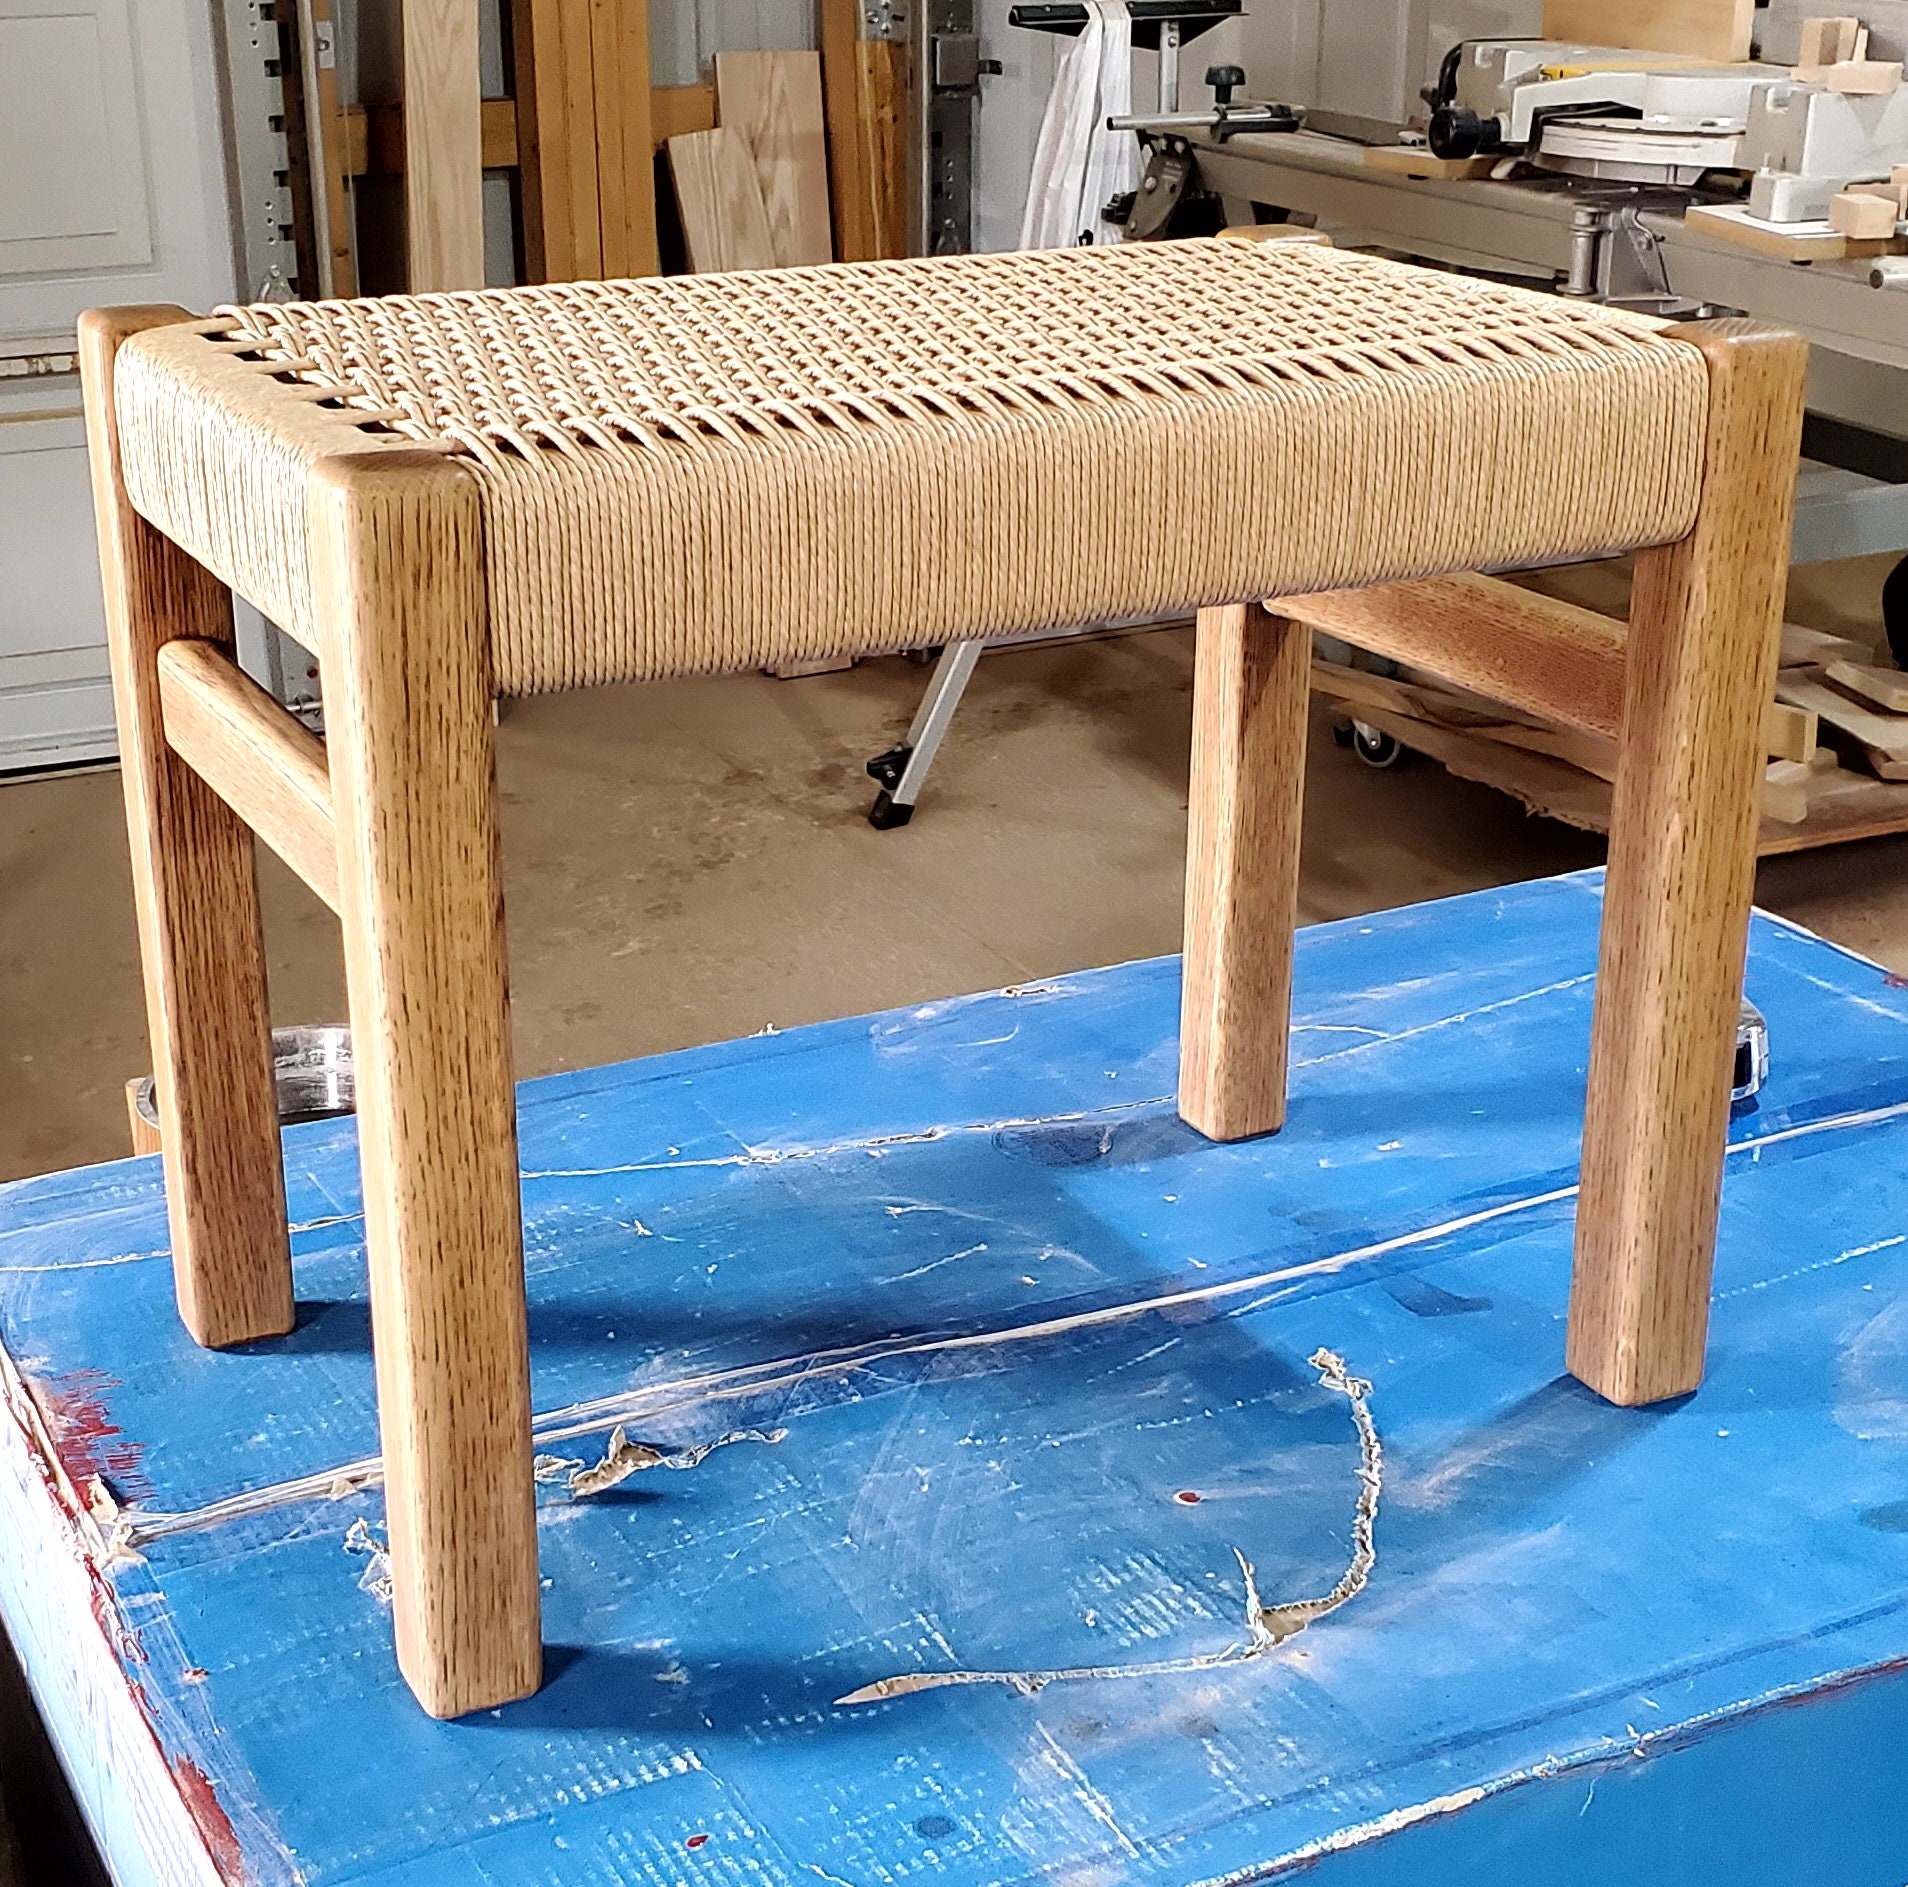 Handmade Danish Cord Bench by Water Street Furniture Studio